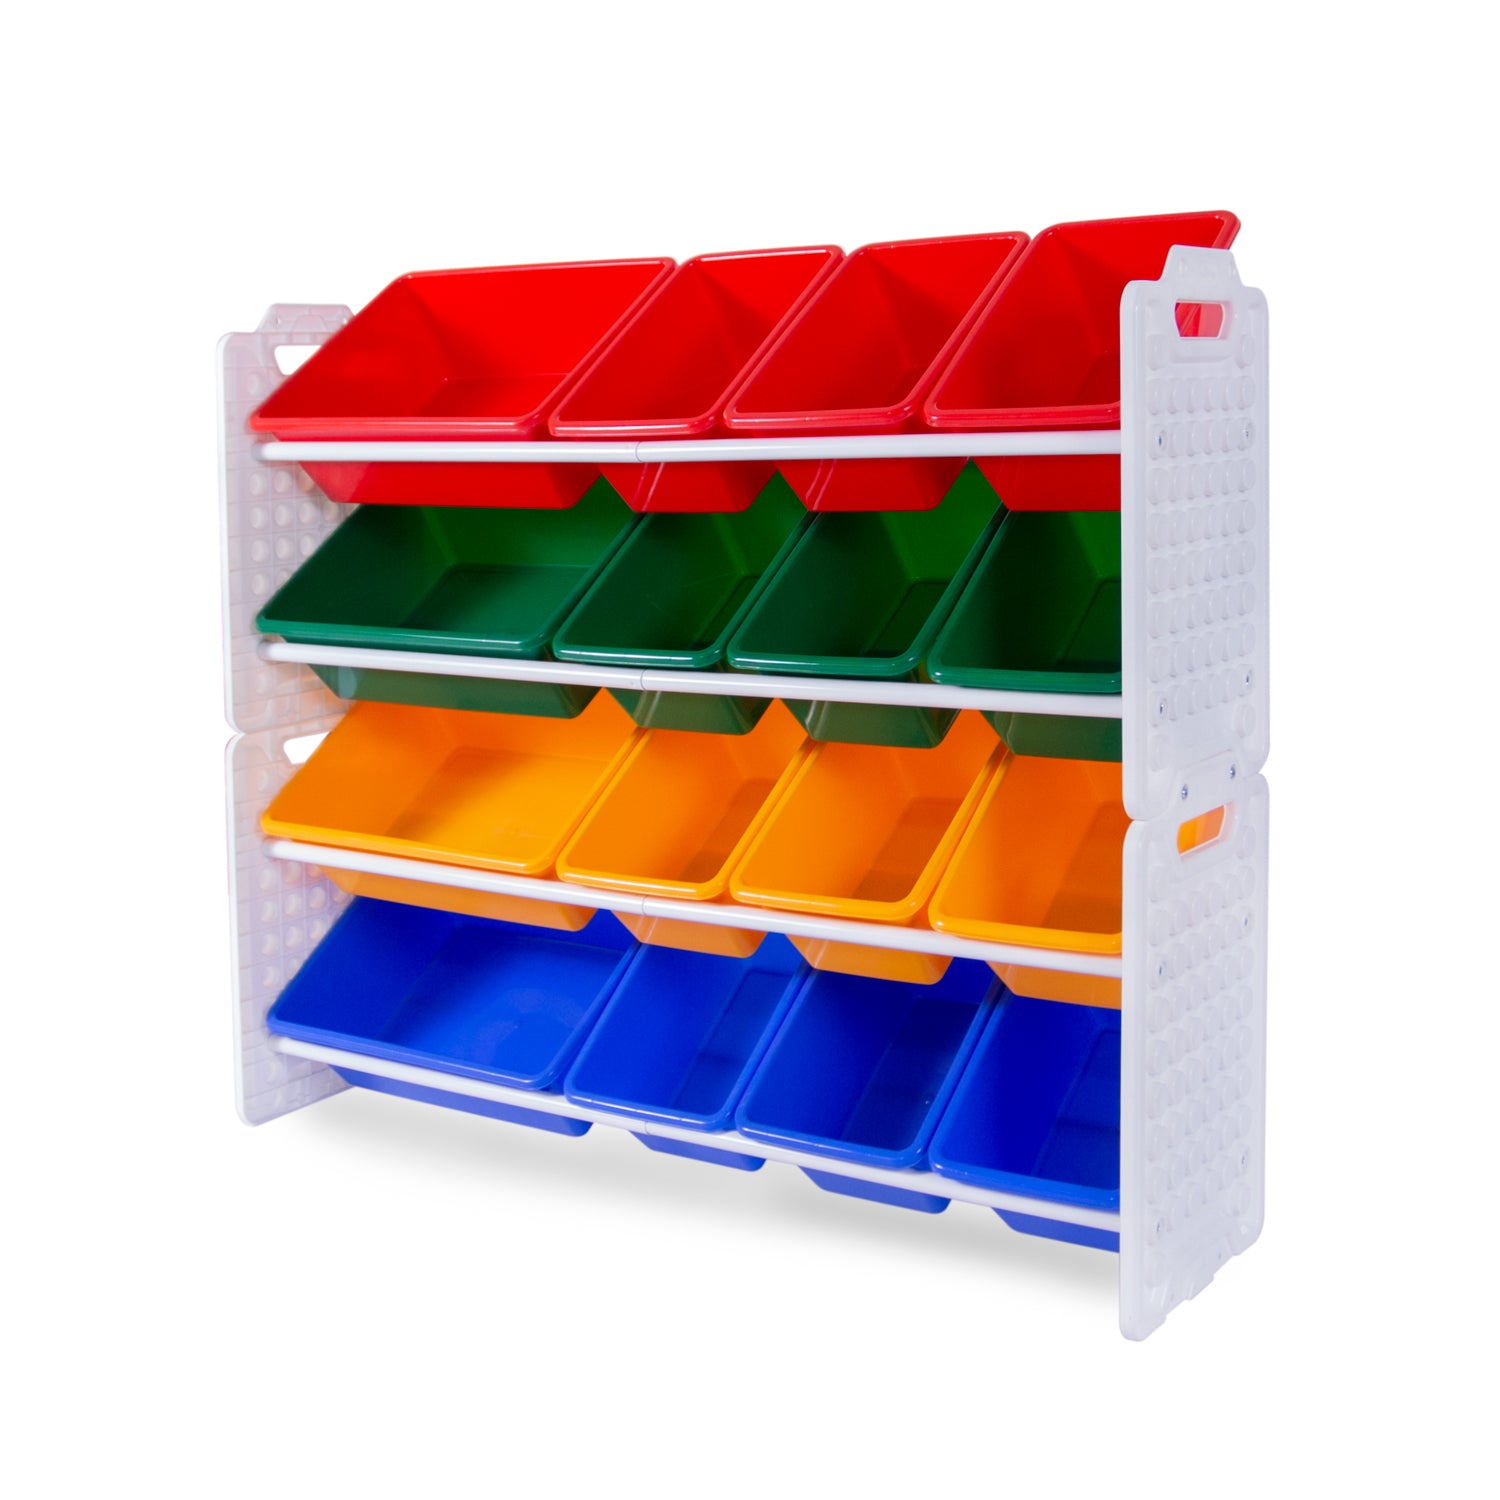 UNiPLAY 16 Bins Toy Storage Organizer - Primary (UB45721)